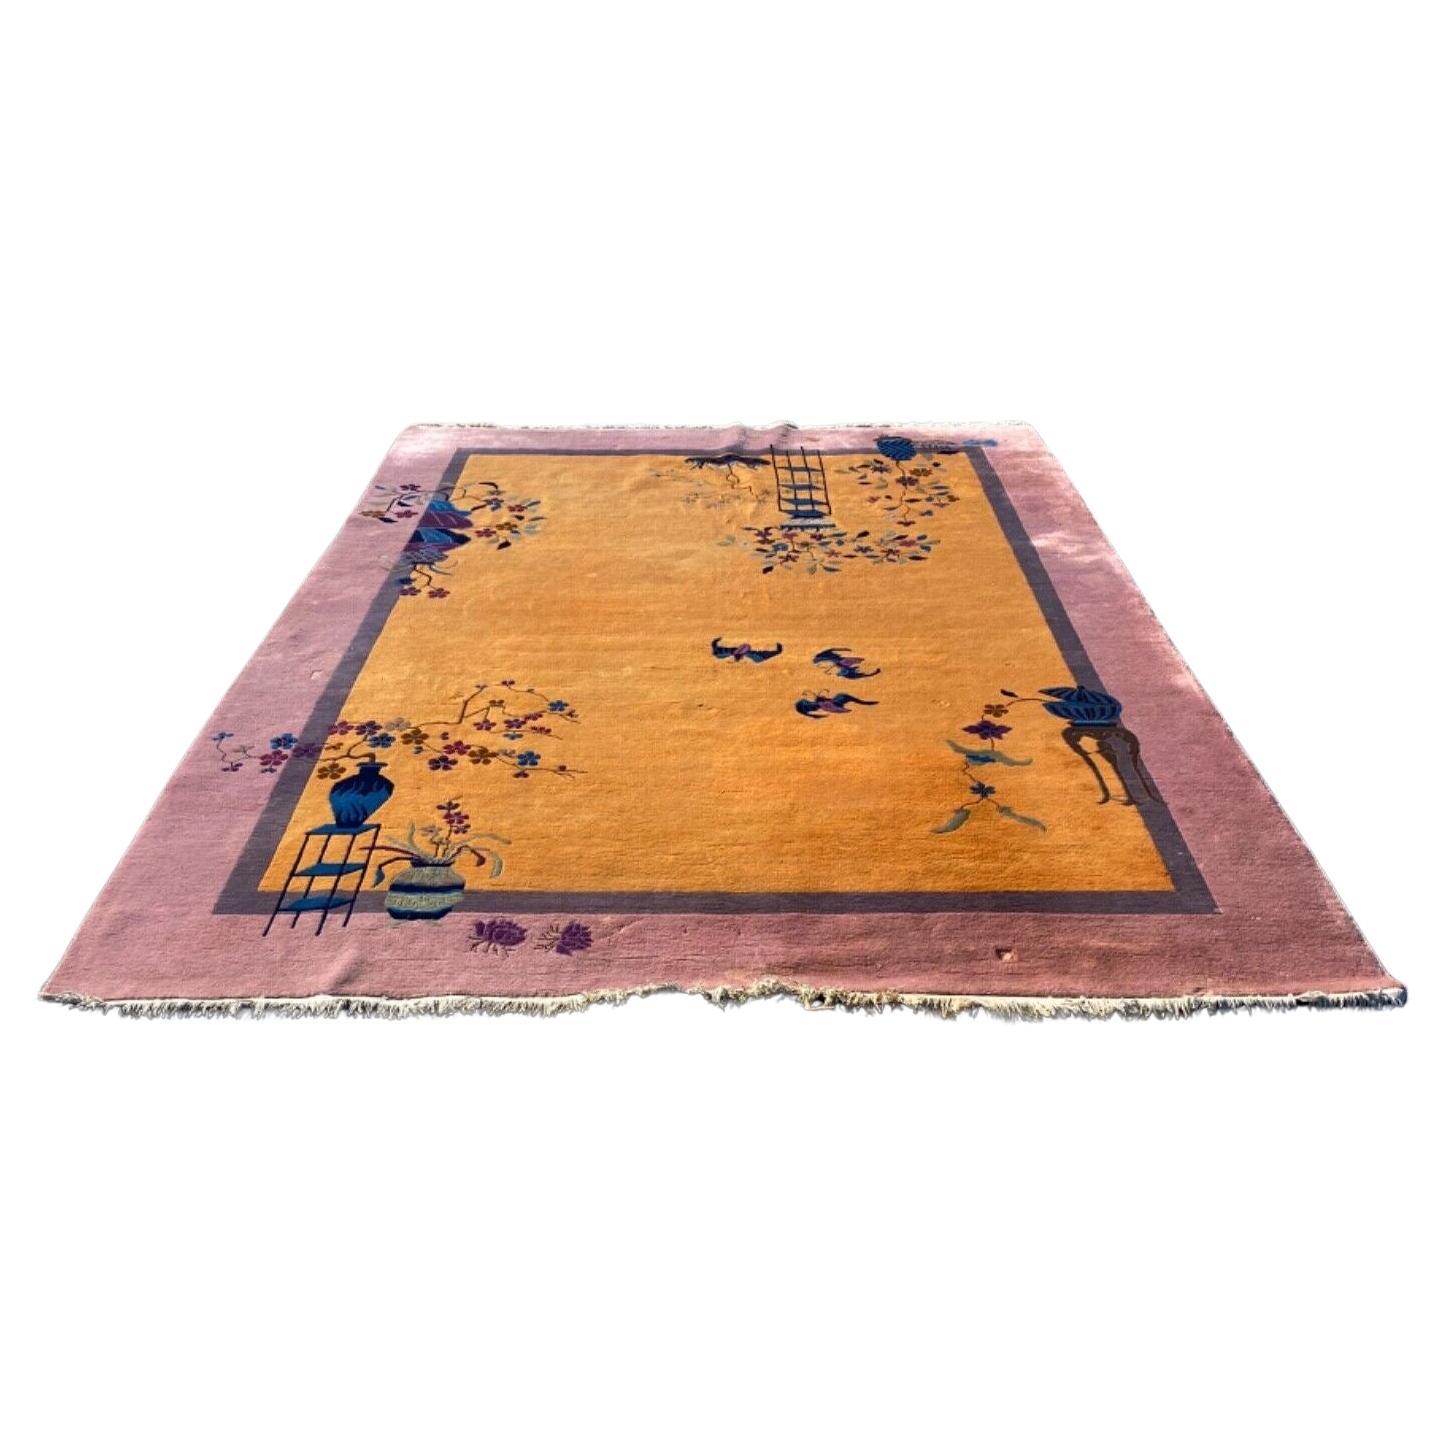 Tapis chinois ancien de style Art déco, attribué à Walter Nichols. Ce tapis en laine, noué à la main, de la taille d'une pièce, présente un champ et une bordure à motifs colorés dans les tons Moutarde, Prune et Lavande. Des gerbes détaillées de